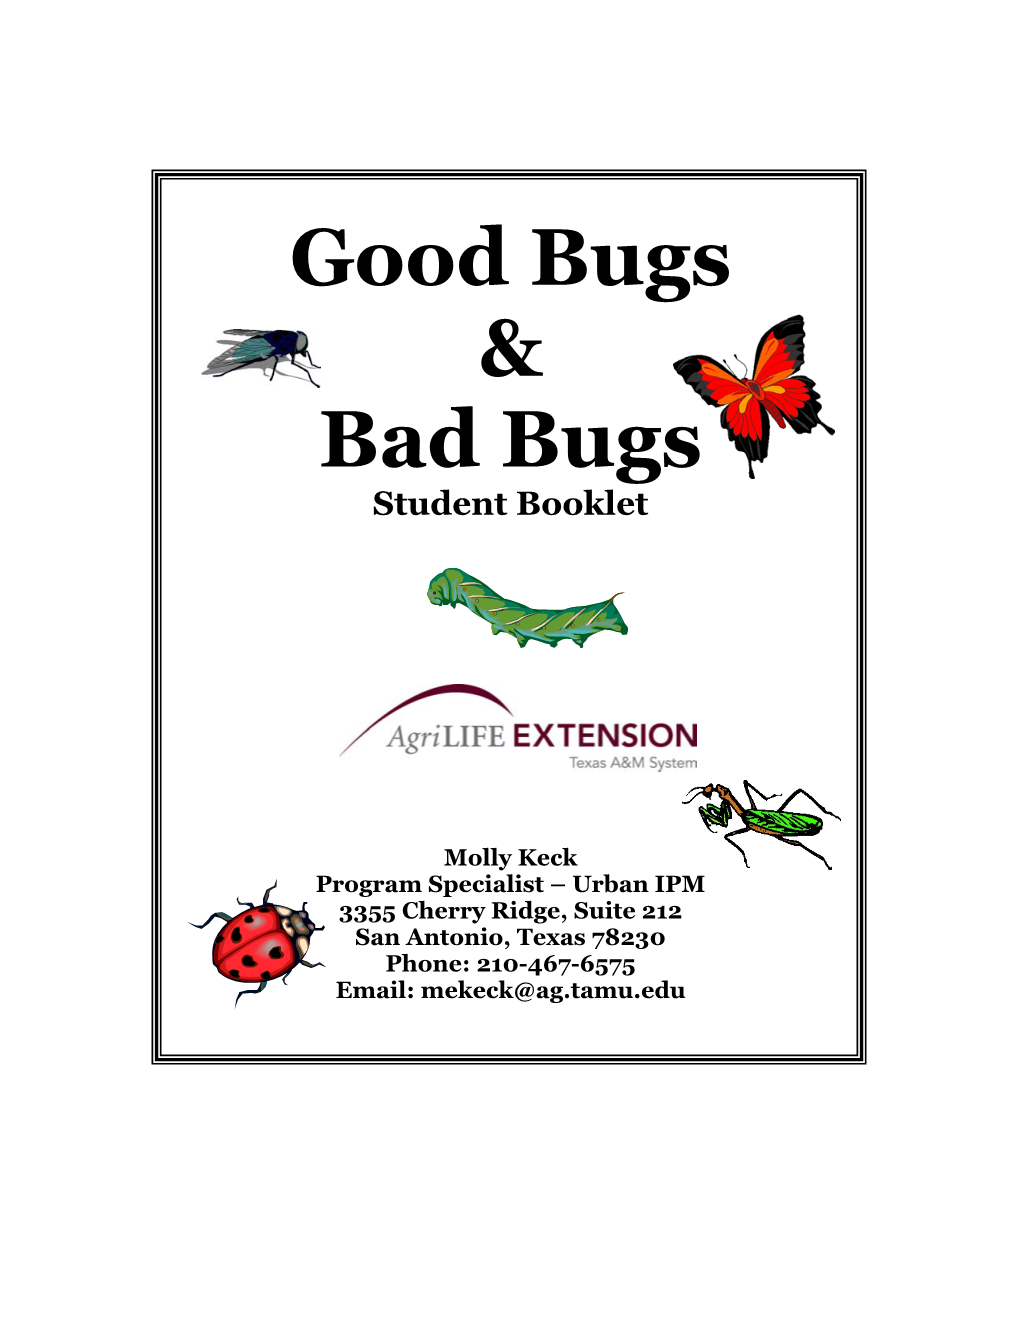 Good Bugs & Bad Bugs